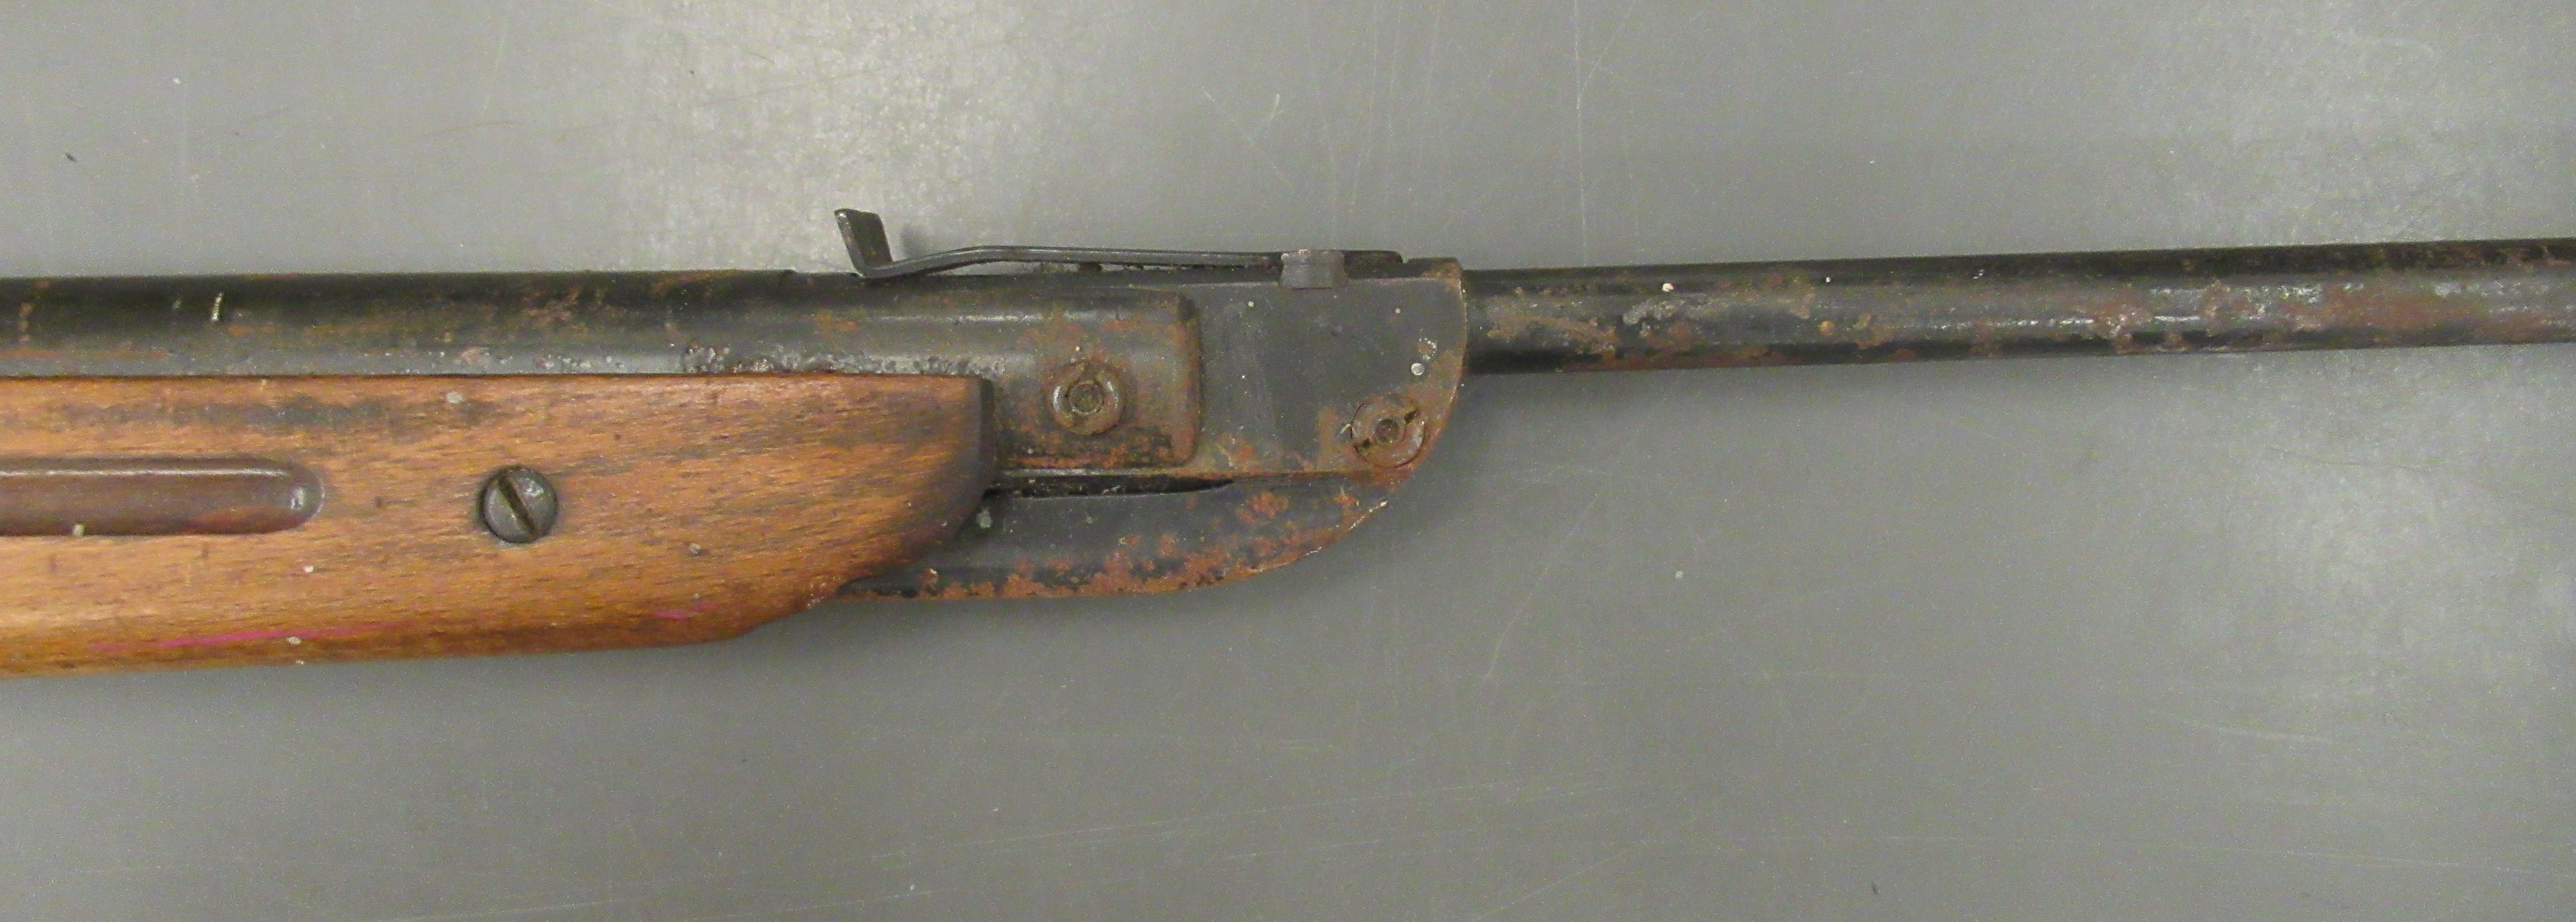 A Diana .22 calibre air rifle - Image 3 of 4